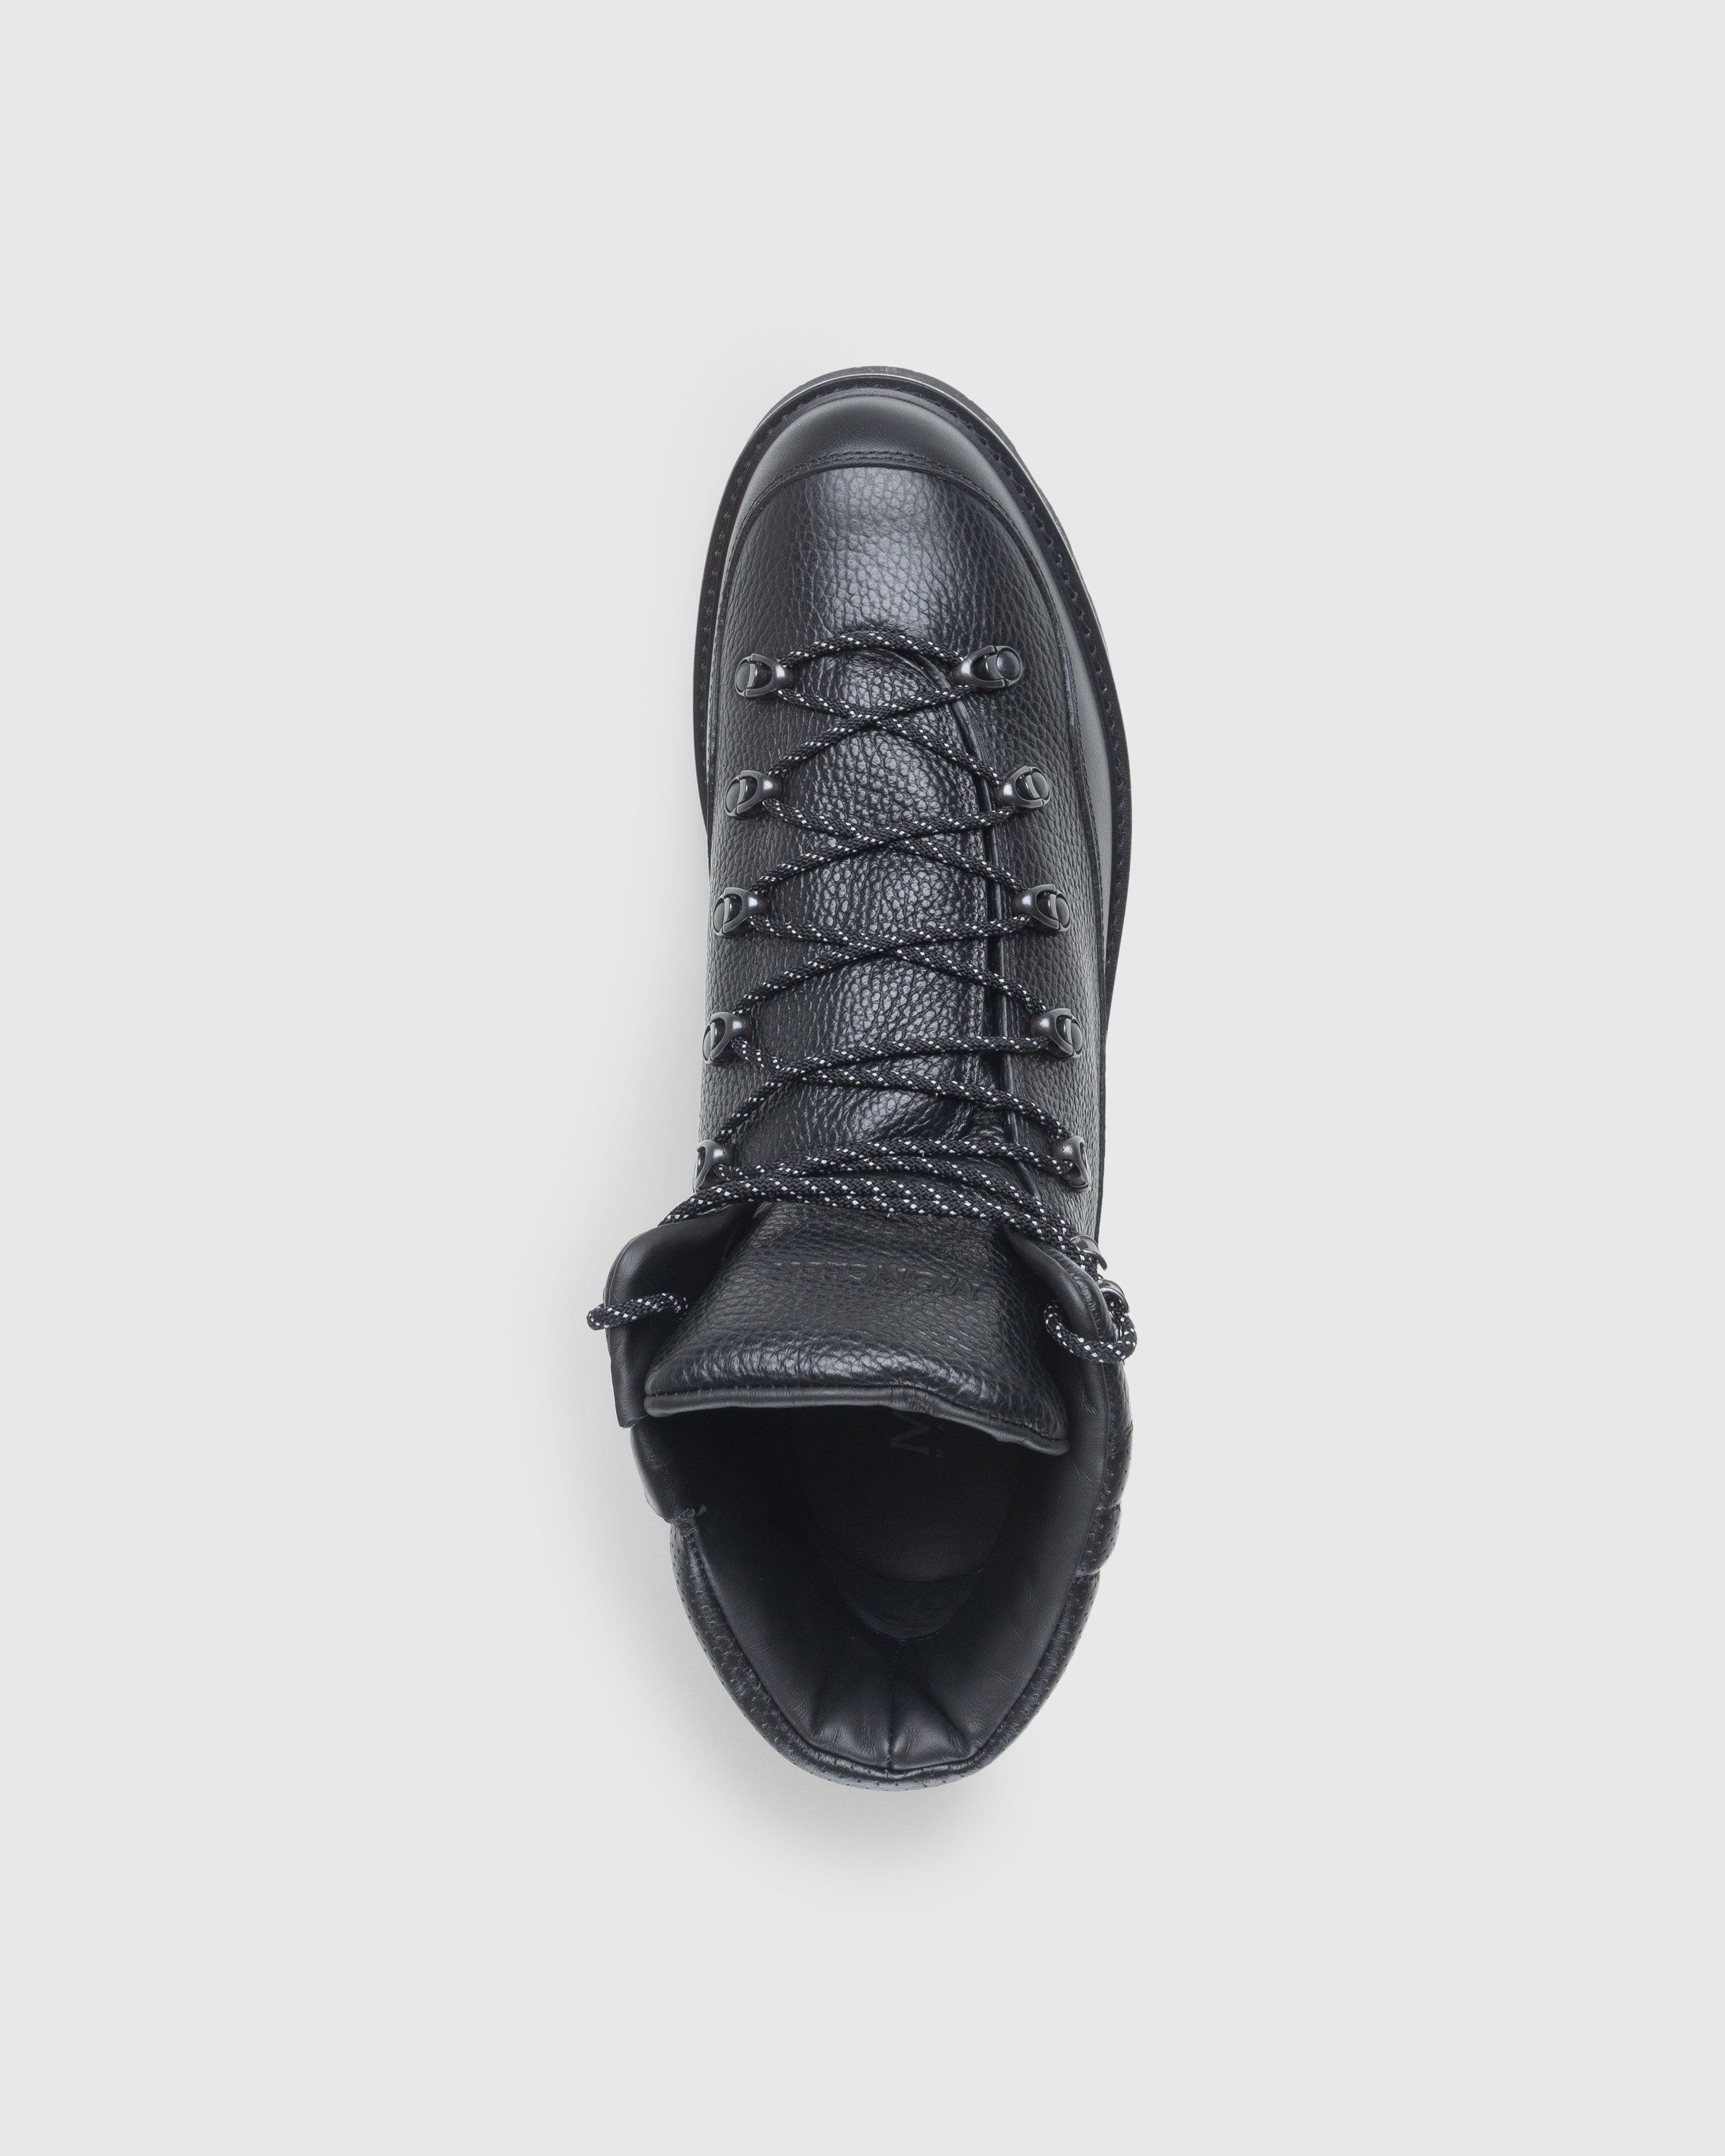 Moncler – Peka Trek Hiking Boots Grey - Sneakers - Grey - Image 5